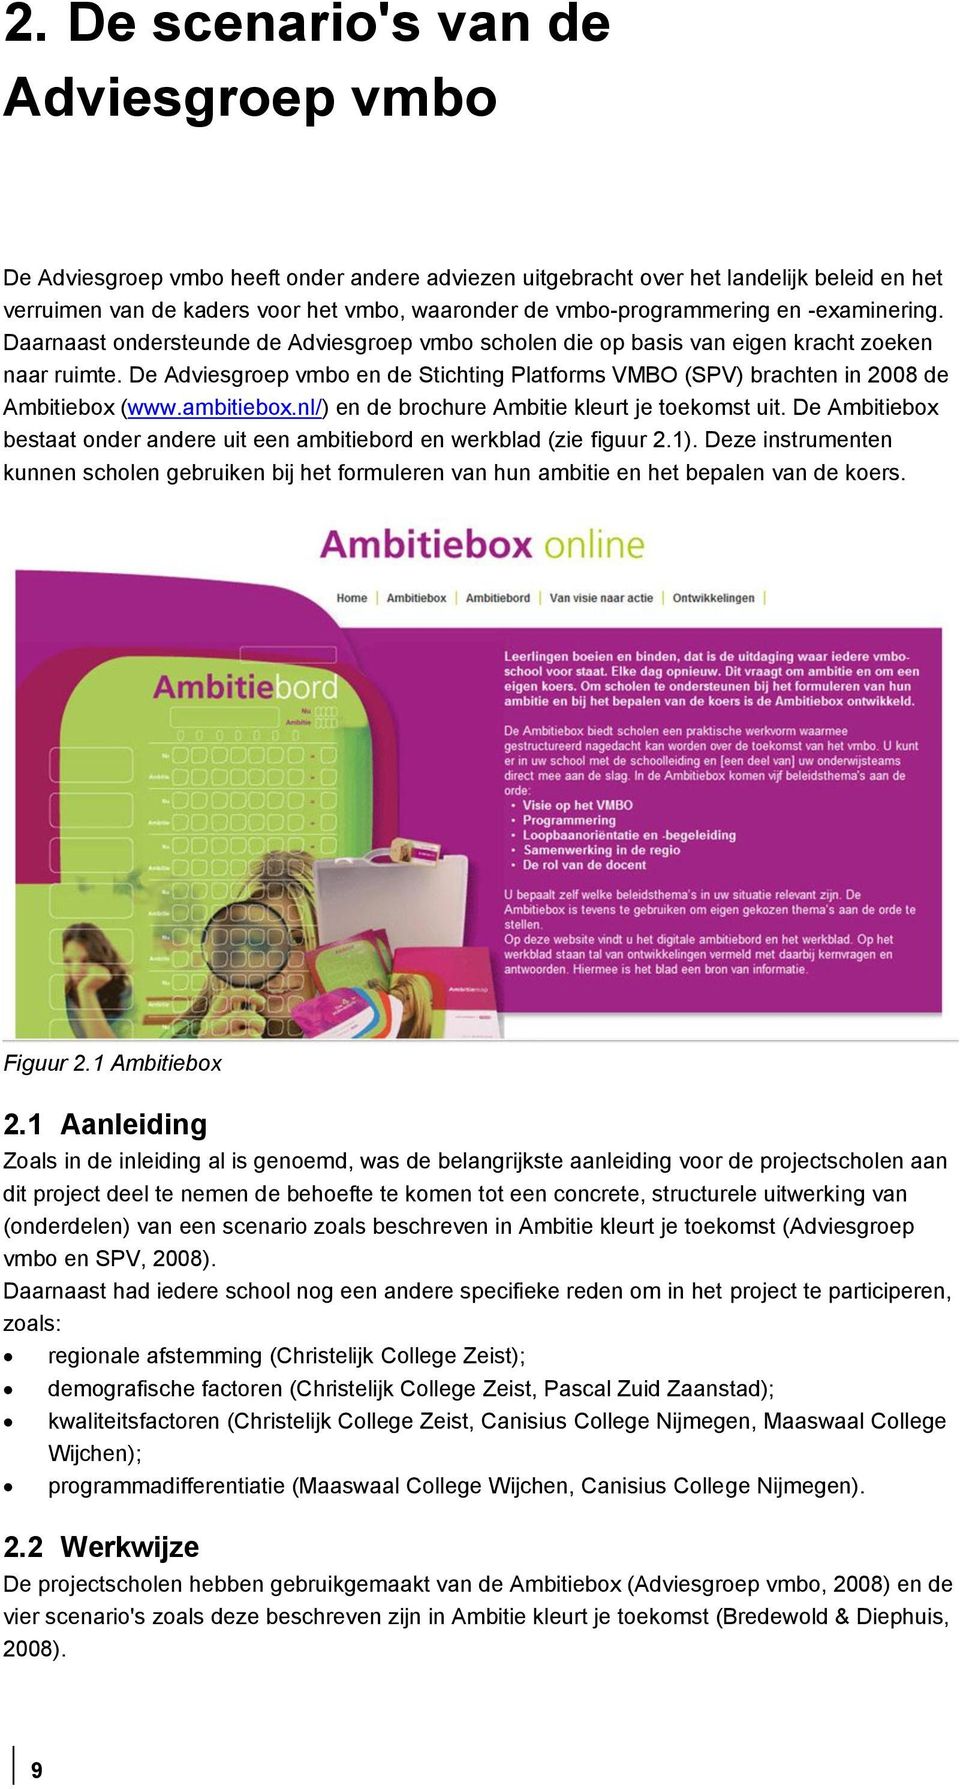 De Adviesgroep vmbo en de Stichting Platforms VMBO (SPV) brachten in 2008 de Ambitiebox (www.ambitiebox.nl/) en de brochure Ambitie kleurt je toekomst uit.